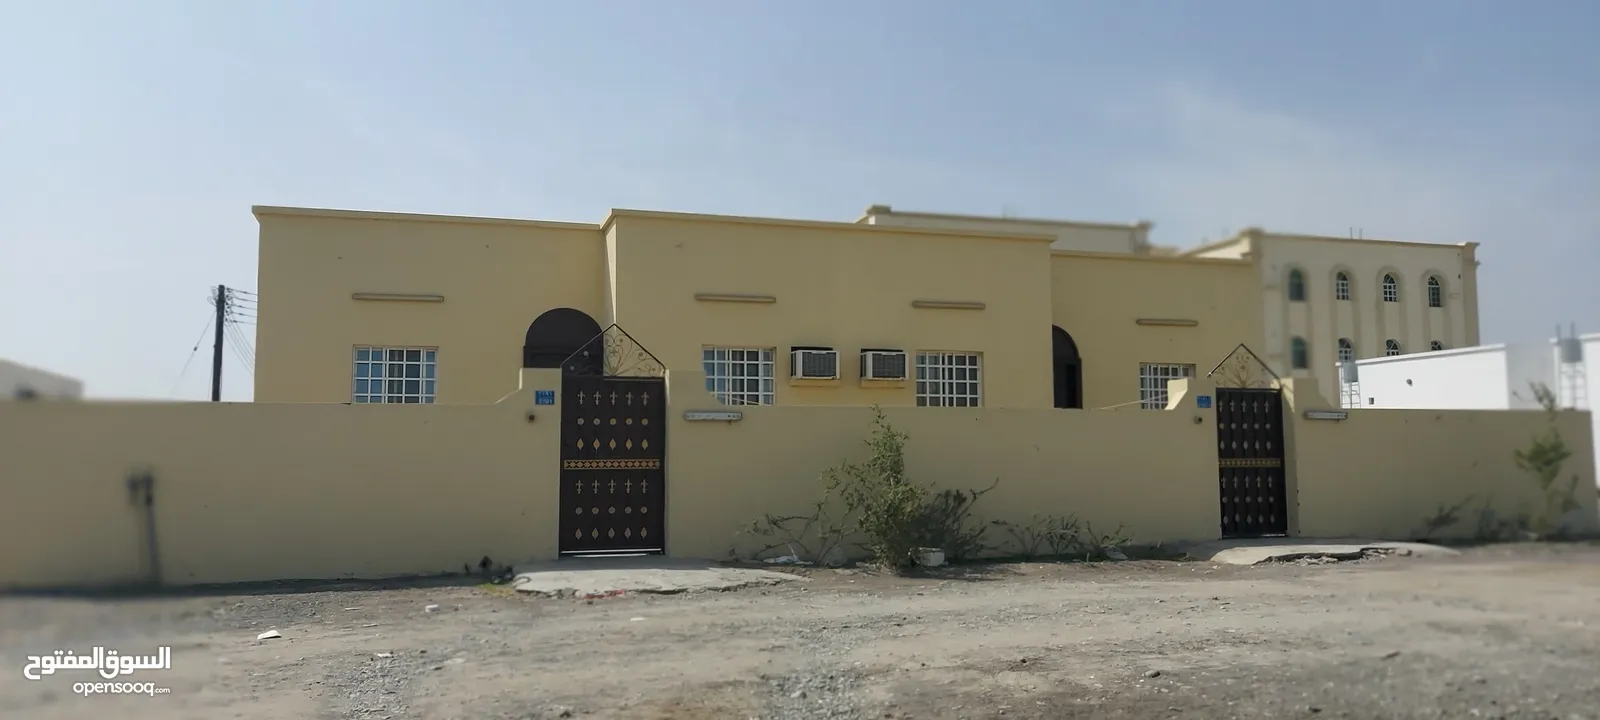 كامب للإيجار فلج القبائل خلف الميرة Camp for rent in Falaj Al Qabail, behind Al Meera